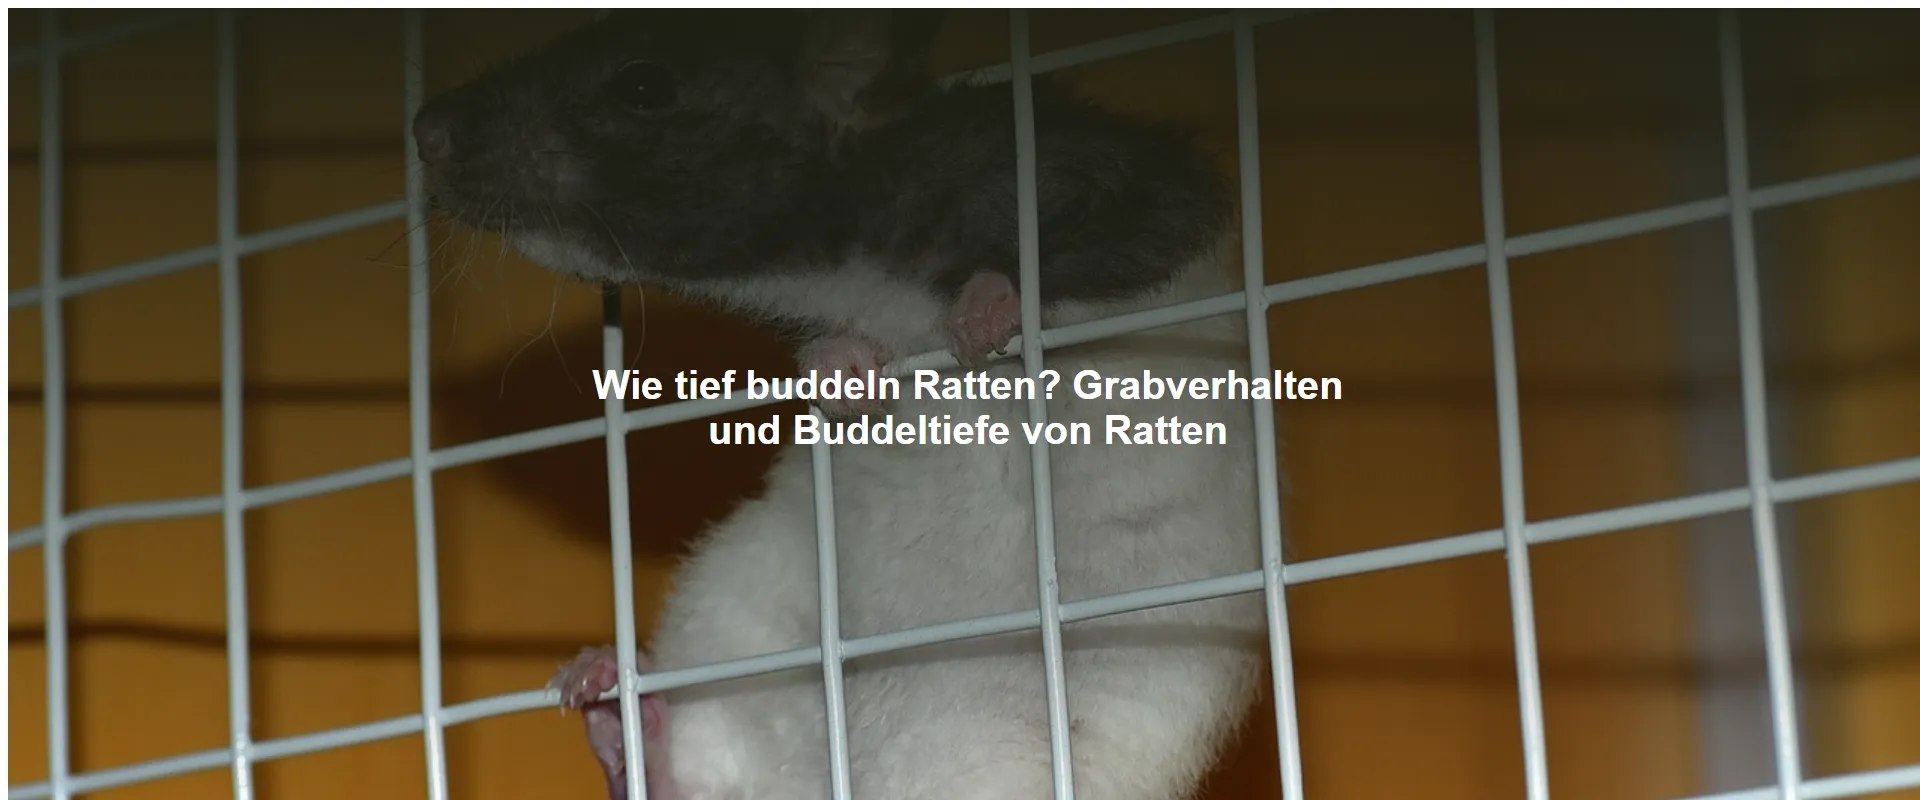 Wie tief buddeln Ratten? Grabverhalten und Buddeltiefe von Ratten